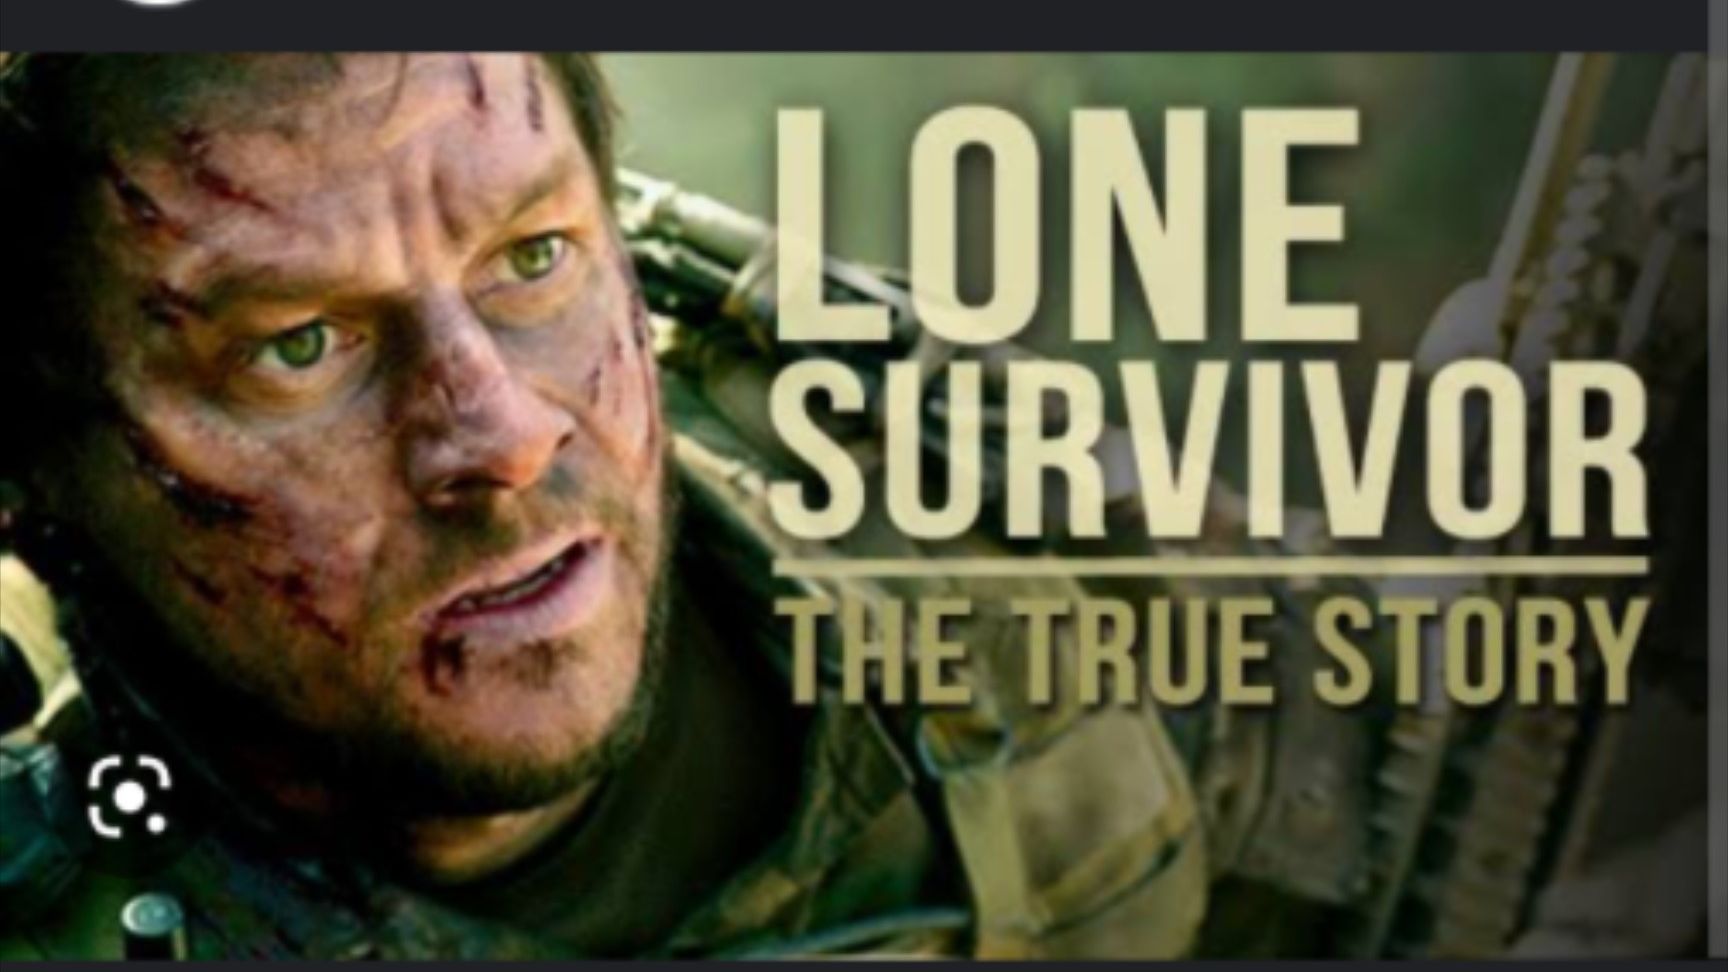 Lone Survivor 2013 720p HD - BiliBili